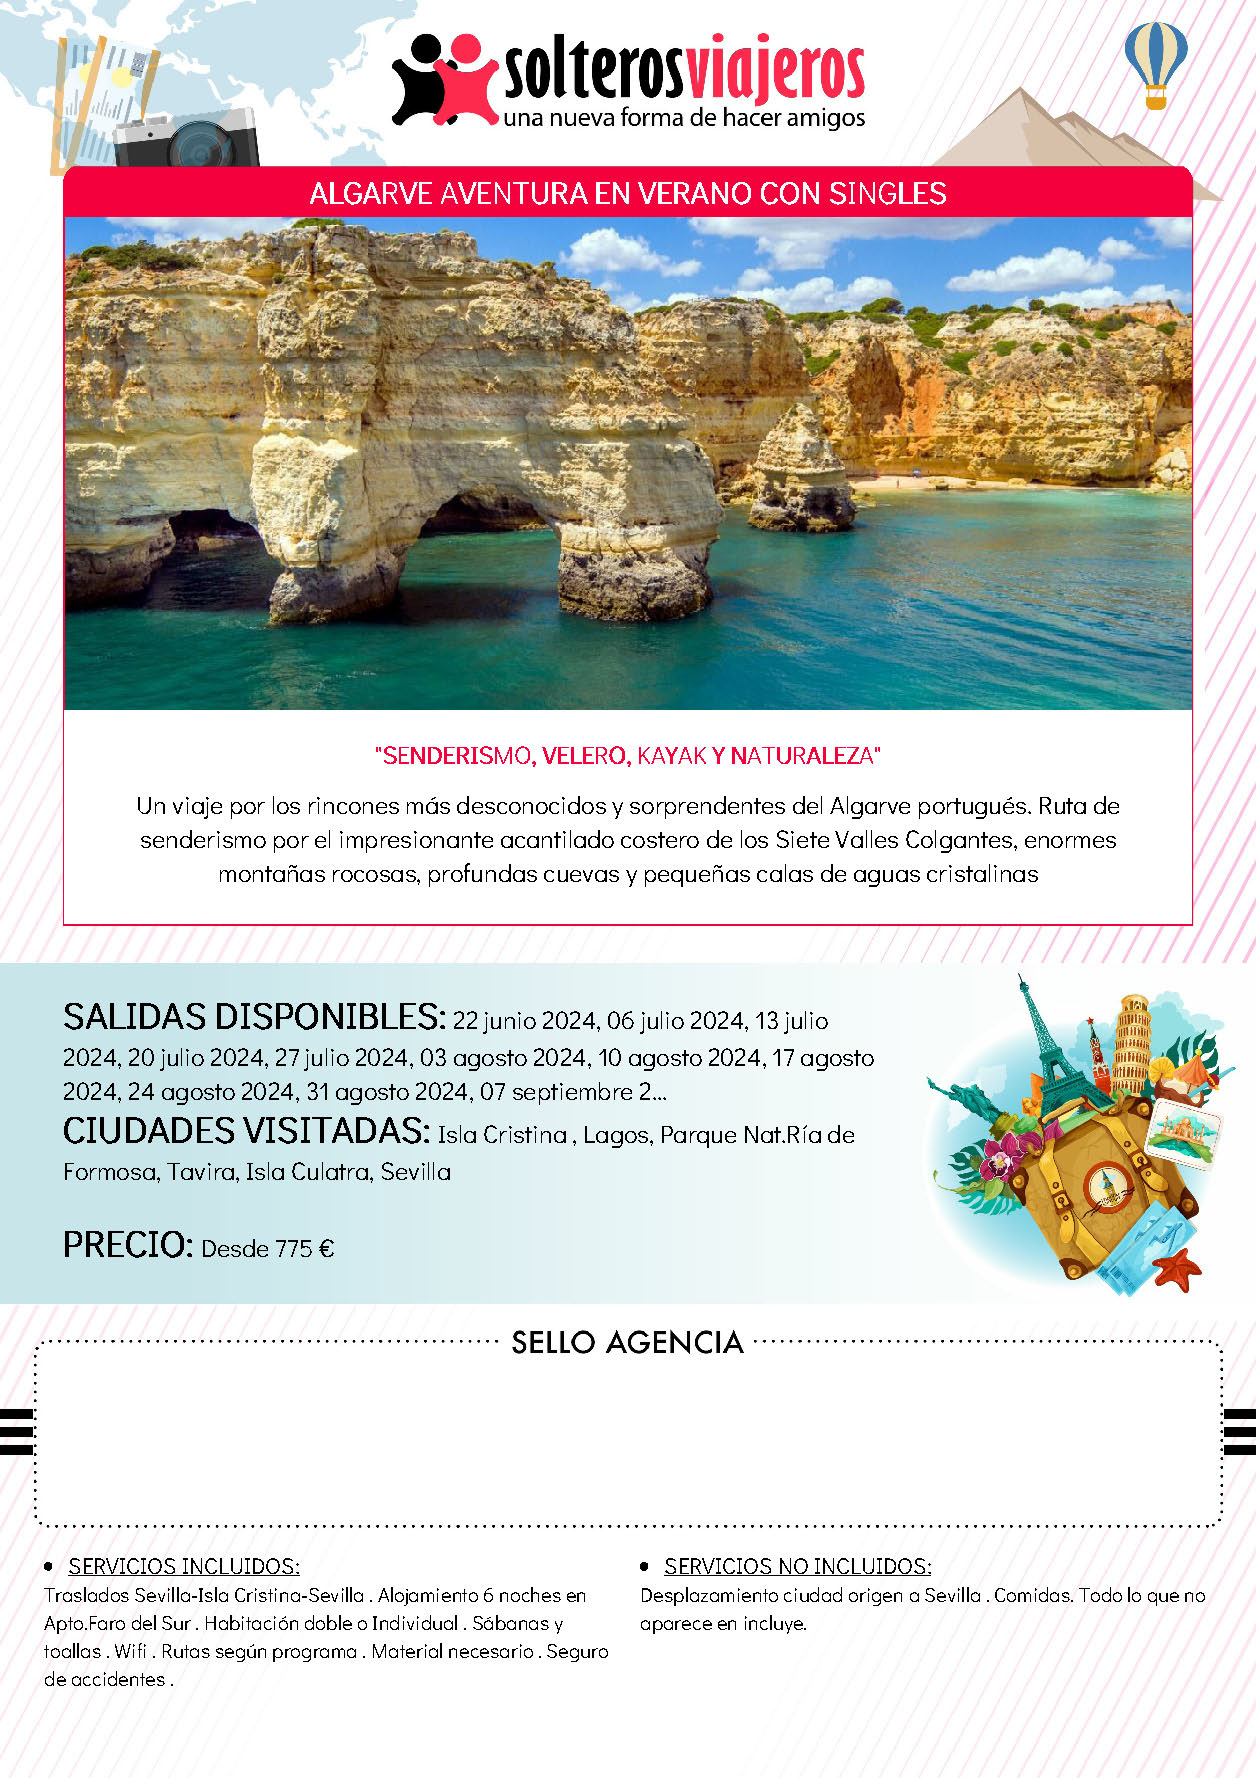 Oferta Solteros Viajeros Algarve Aventura en verano con singles salidas Junio a Septiembre 2024